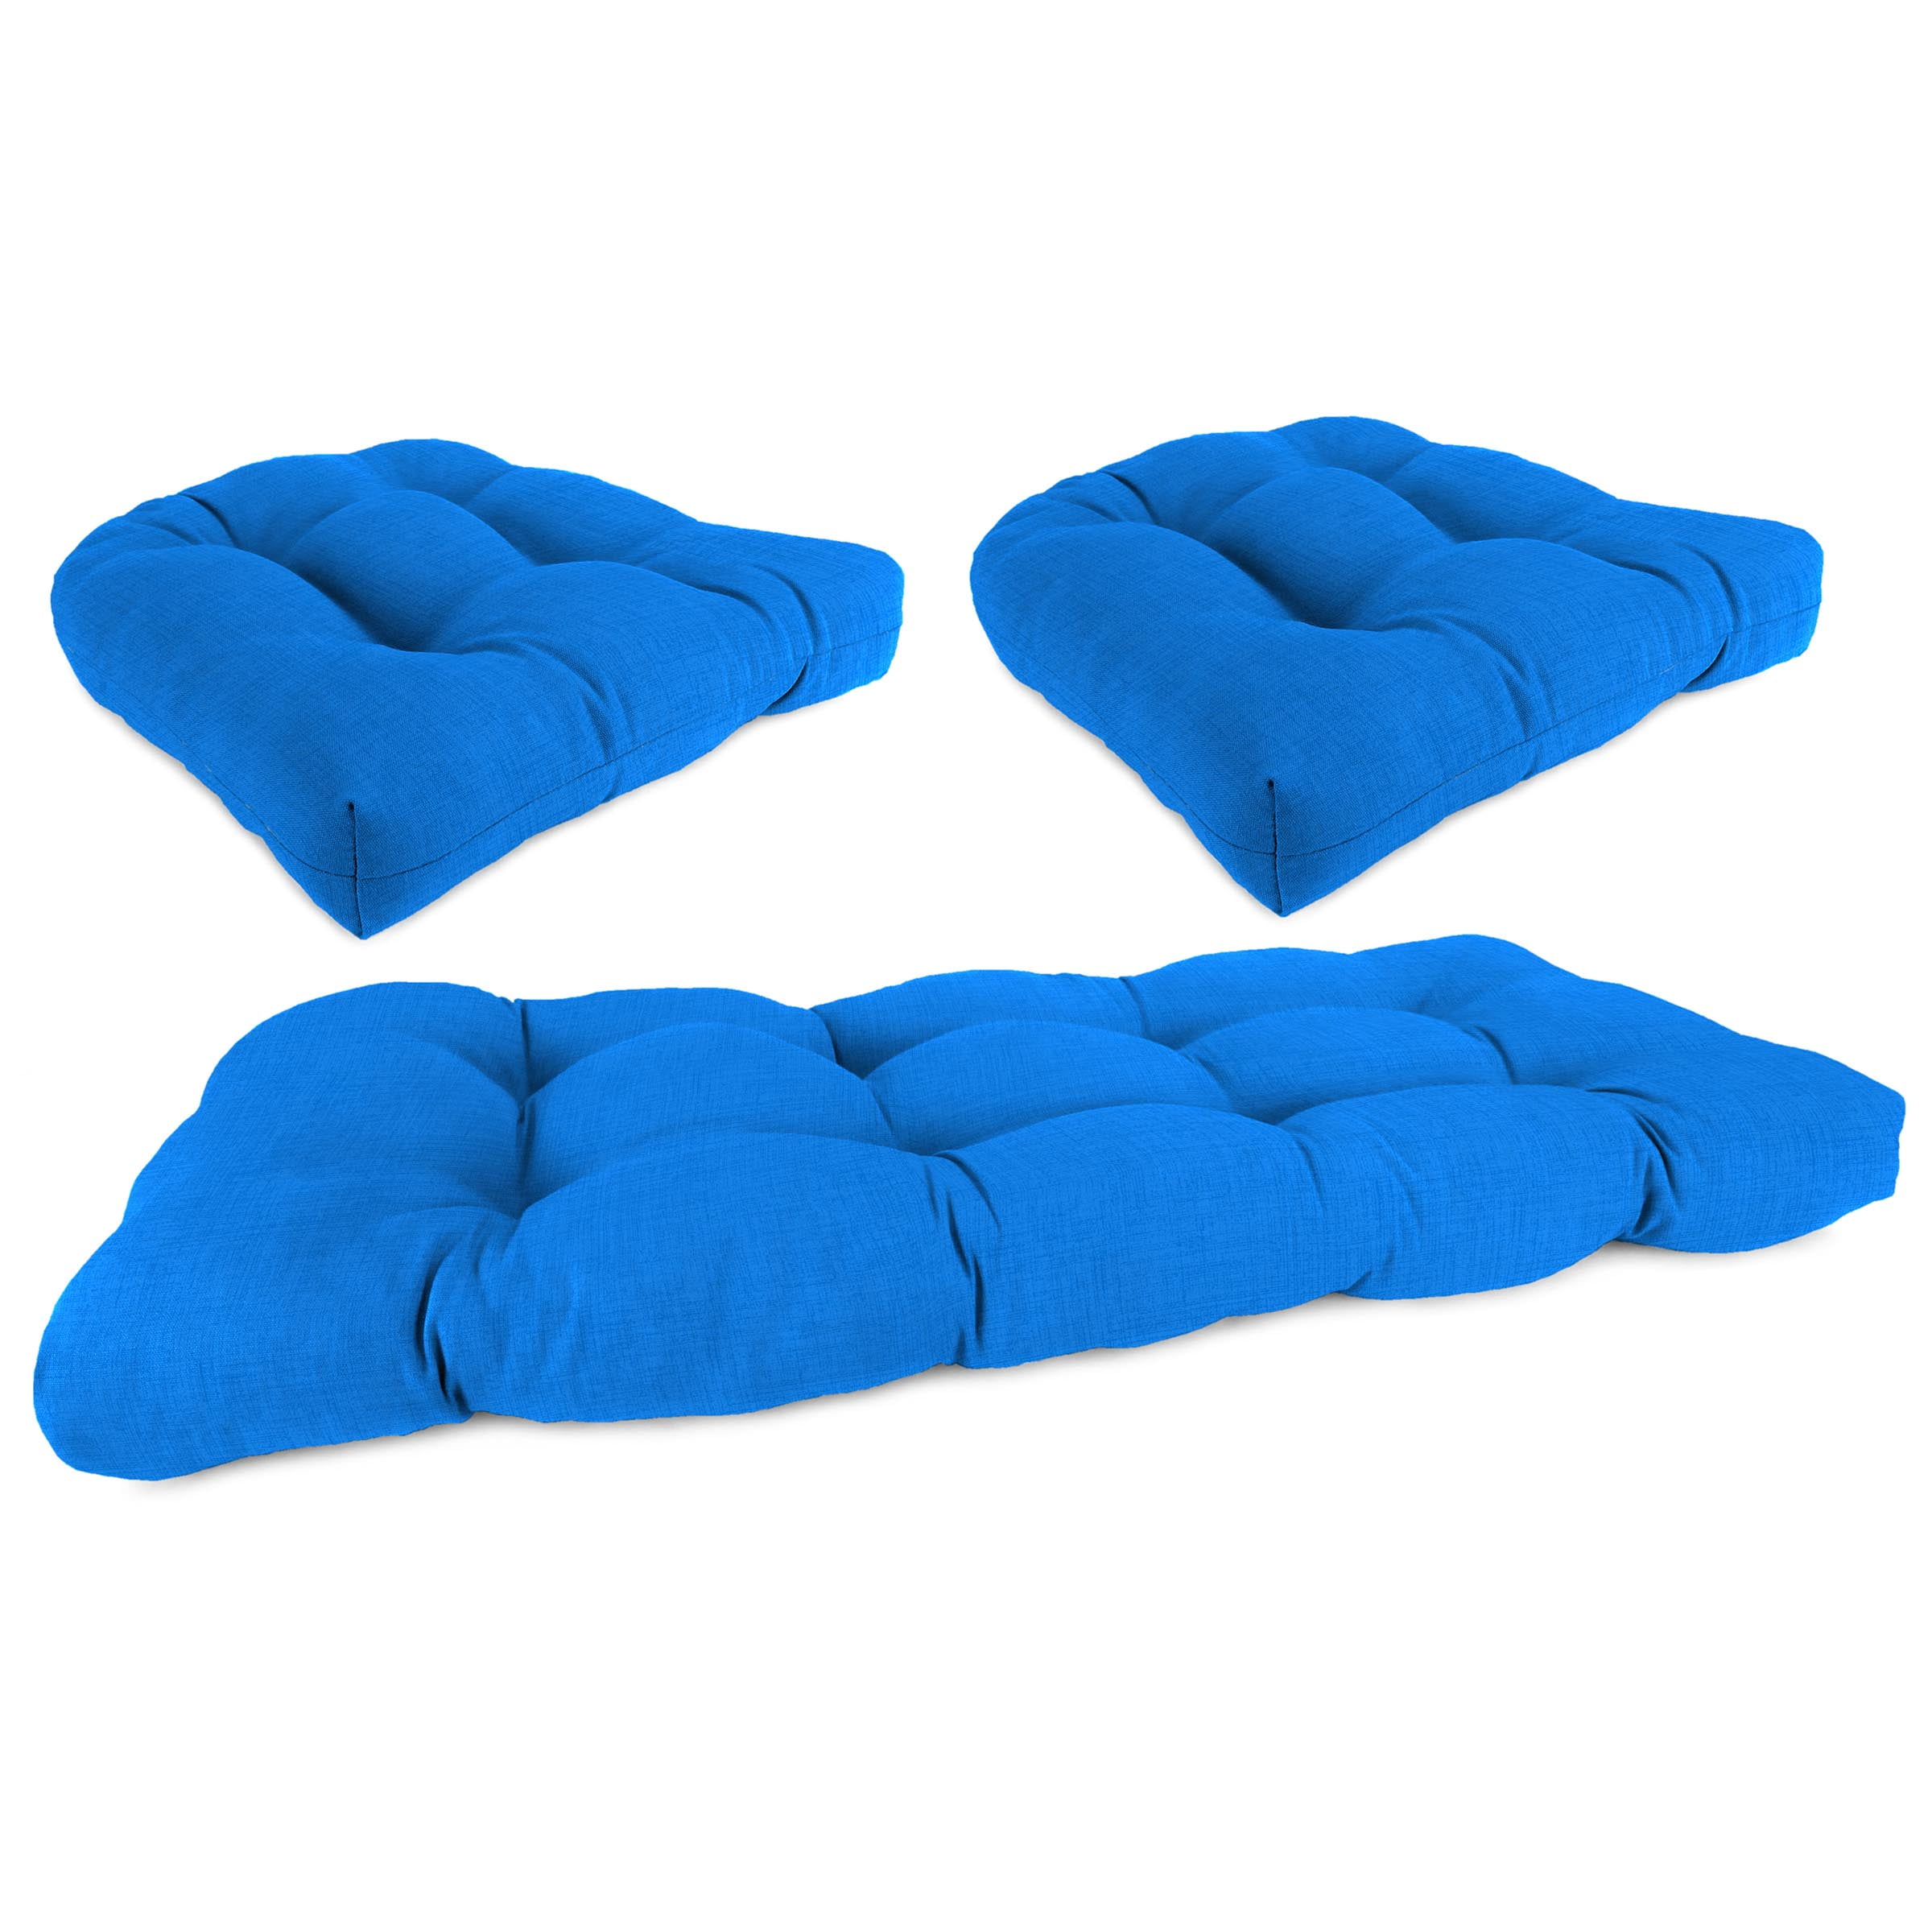 Jordan Manufacturing 12 inch x 18 inch Celosia Princess Blue Solid Rectangular Outdoor Lumbar Throw Pillow (2 Pack)